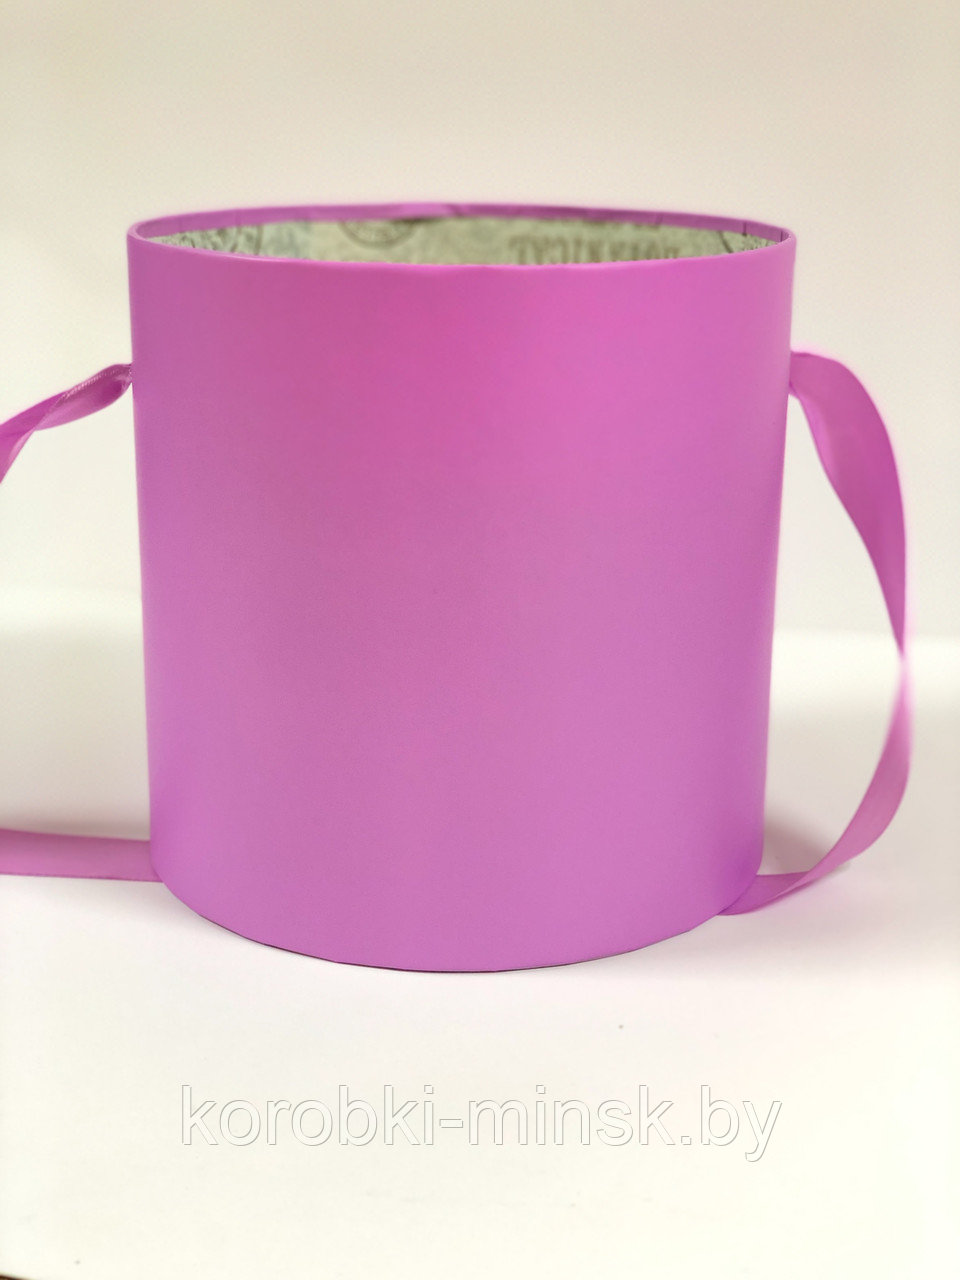 Шляпная коробка эконом без крышки D22,5 H23 цвет лиловый.